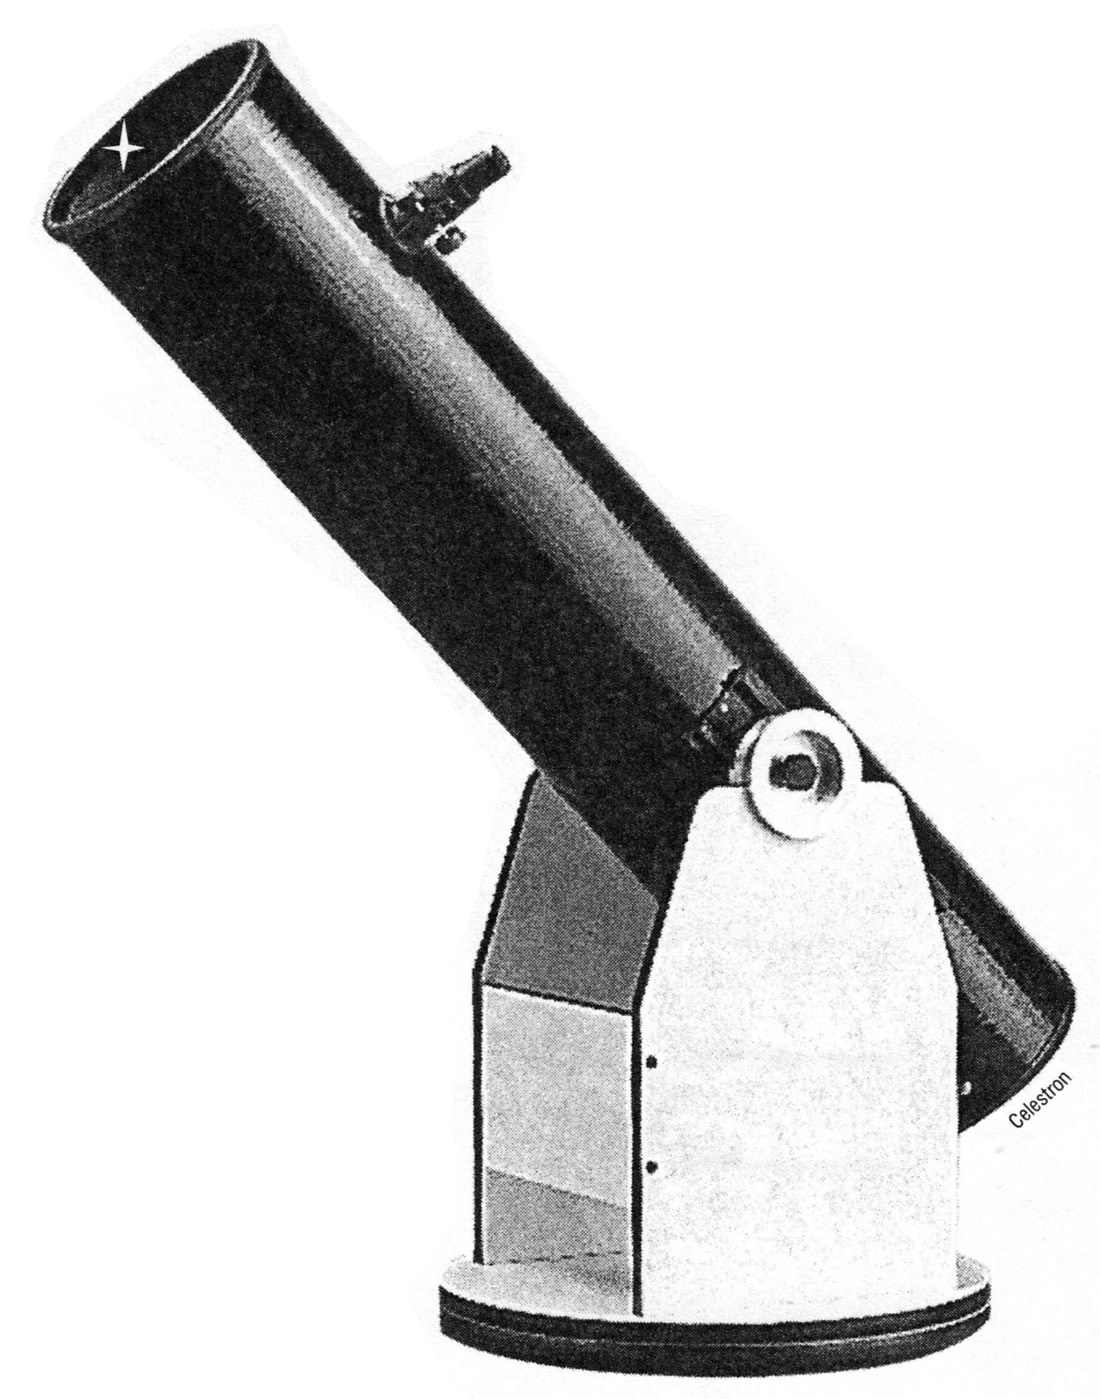 Образец телескопа, установленного на монтировку Добсона